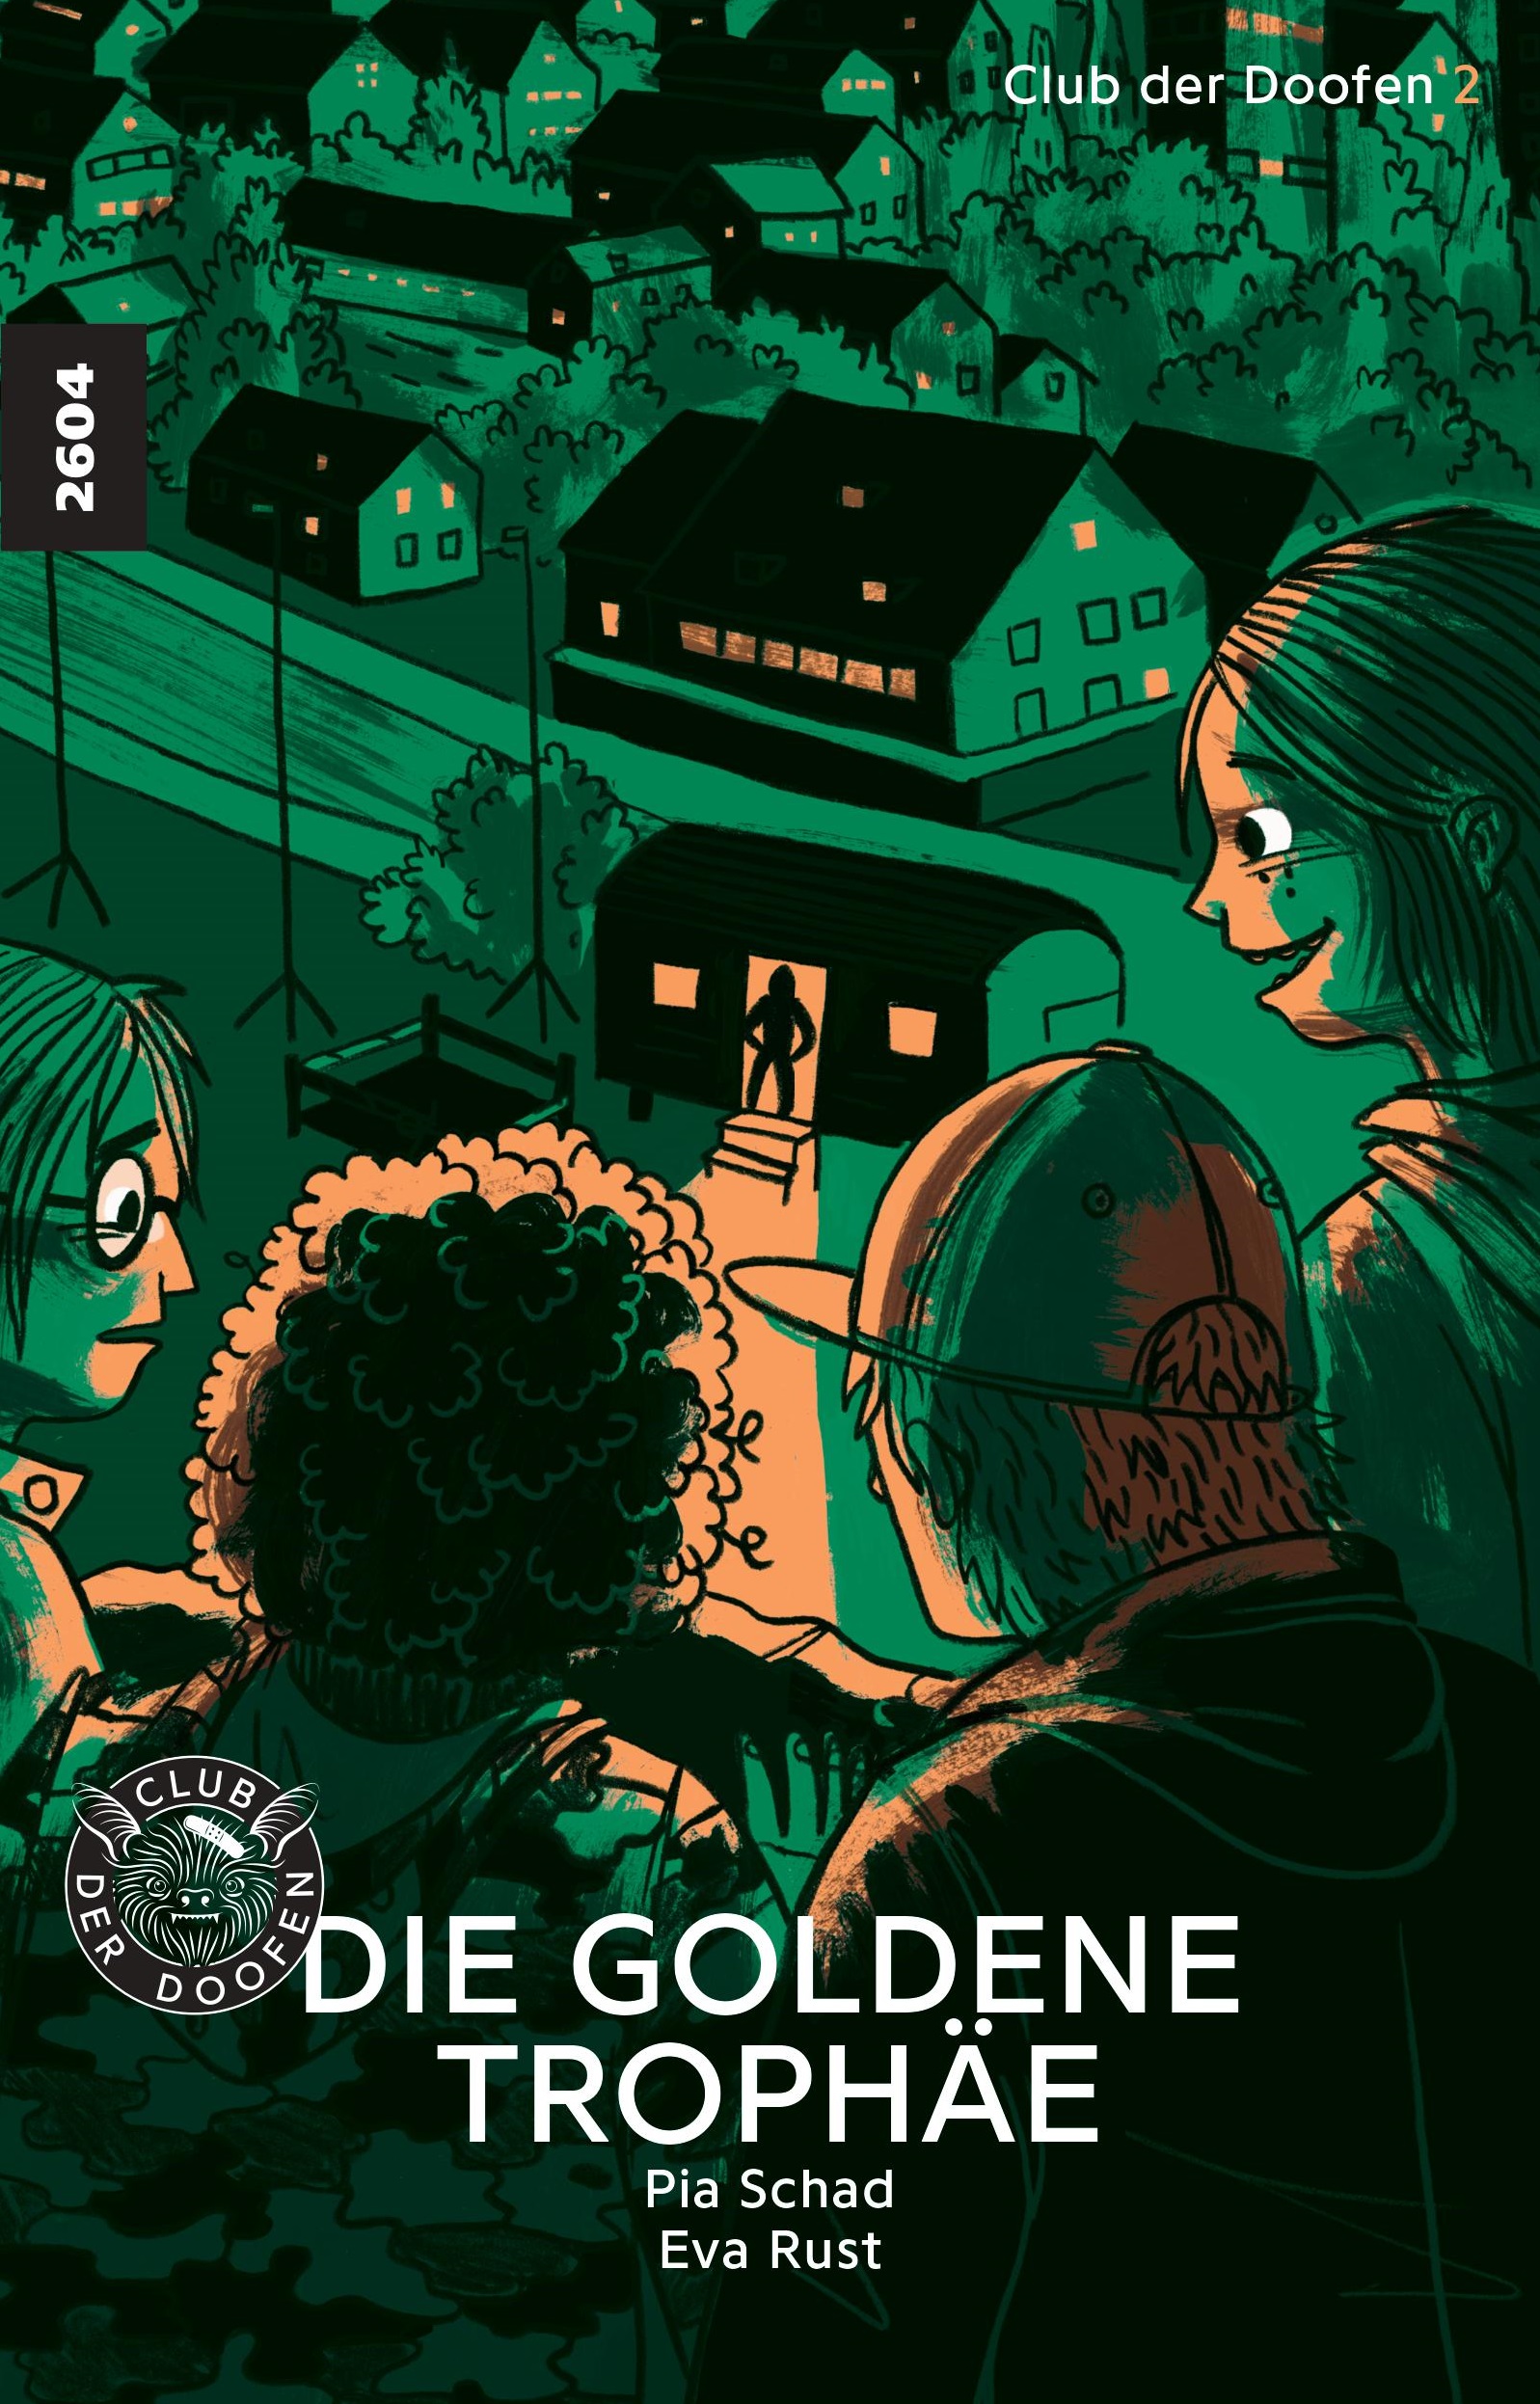 Club der Doofen 2: Die goldene Trophaee, ein Jugendbuch von Pia Schad, Illustration von Eva Rust, SJW Verlag, Krimi